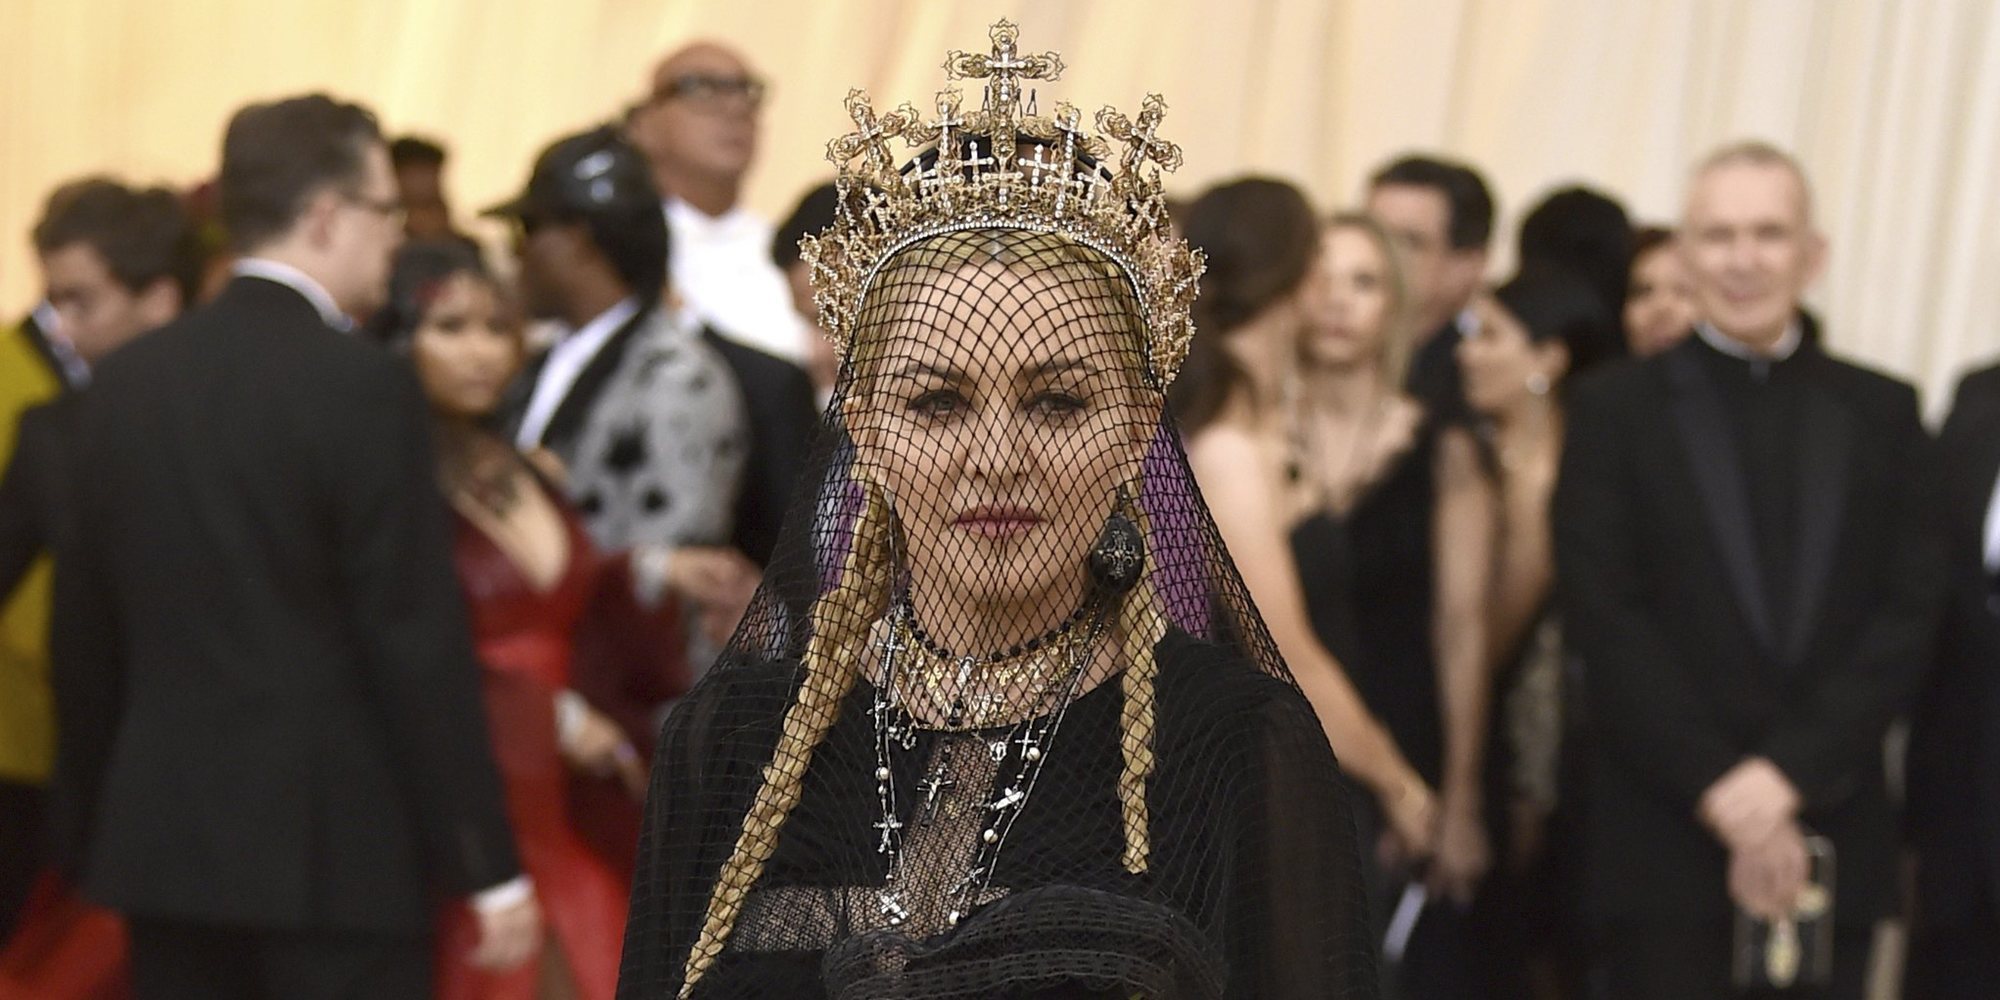 El secreto de Madonna: Quiere romper las normas con su nuevo disco